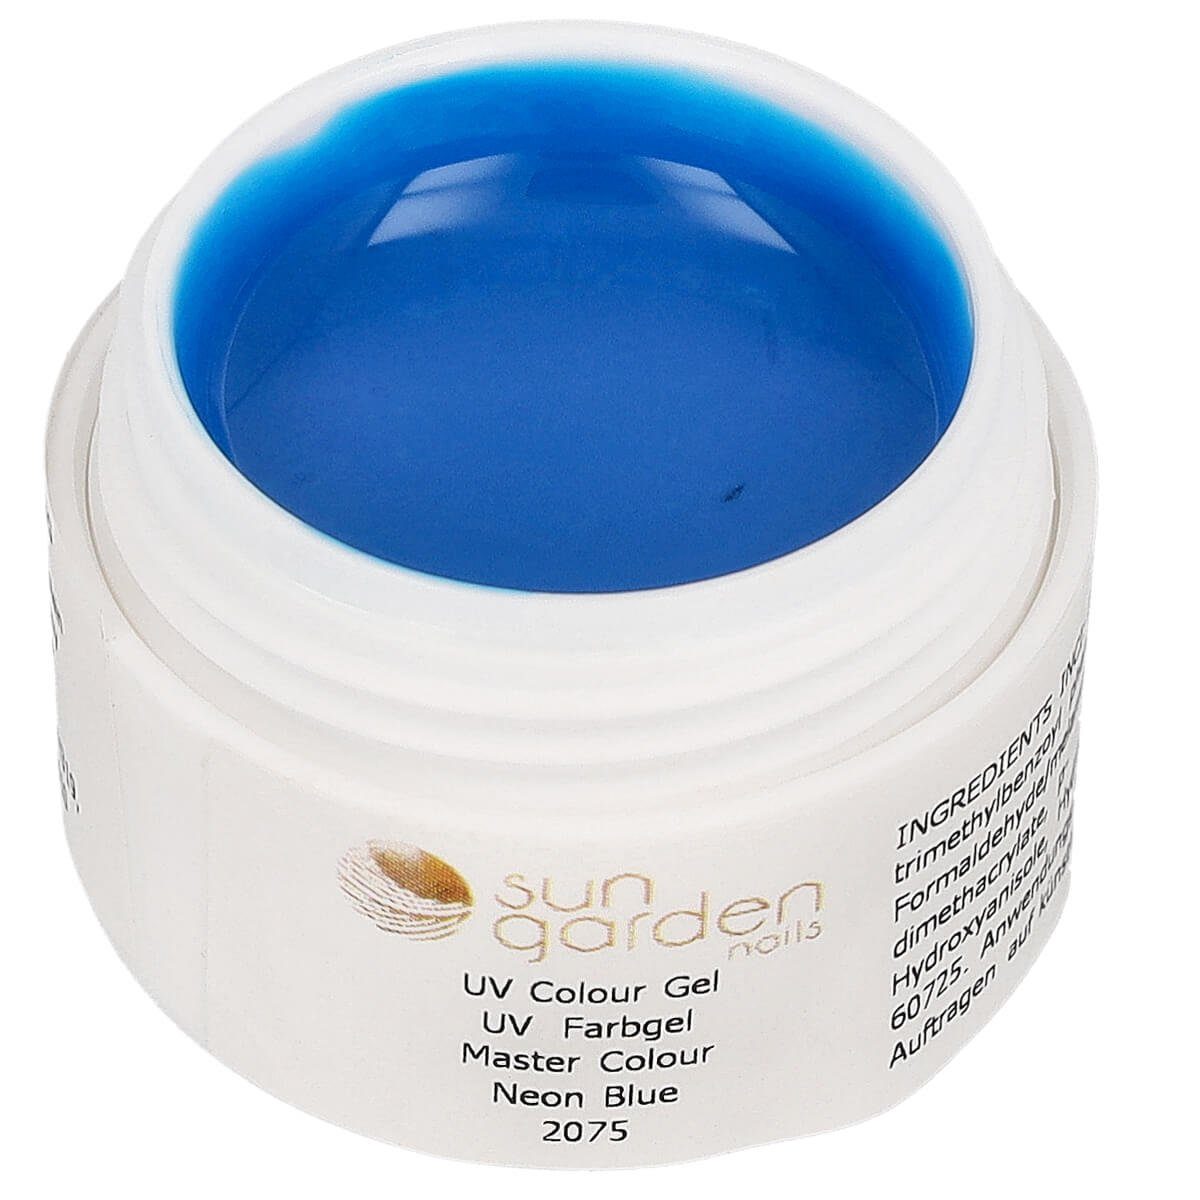 Sun Garden Nails UV-Gel Master Color - Supreme Line N°2075 Neon Blue 5 ml - UV Color Gel